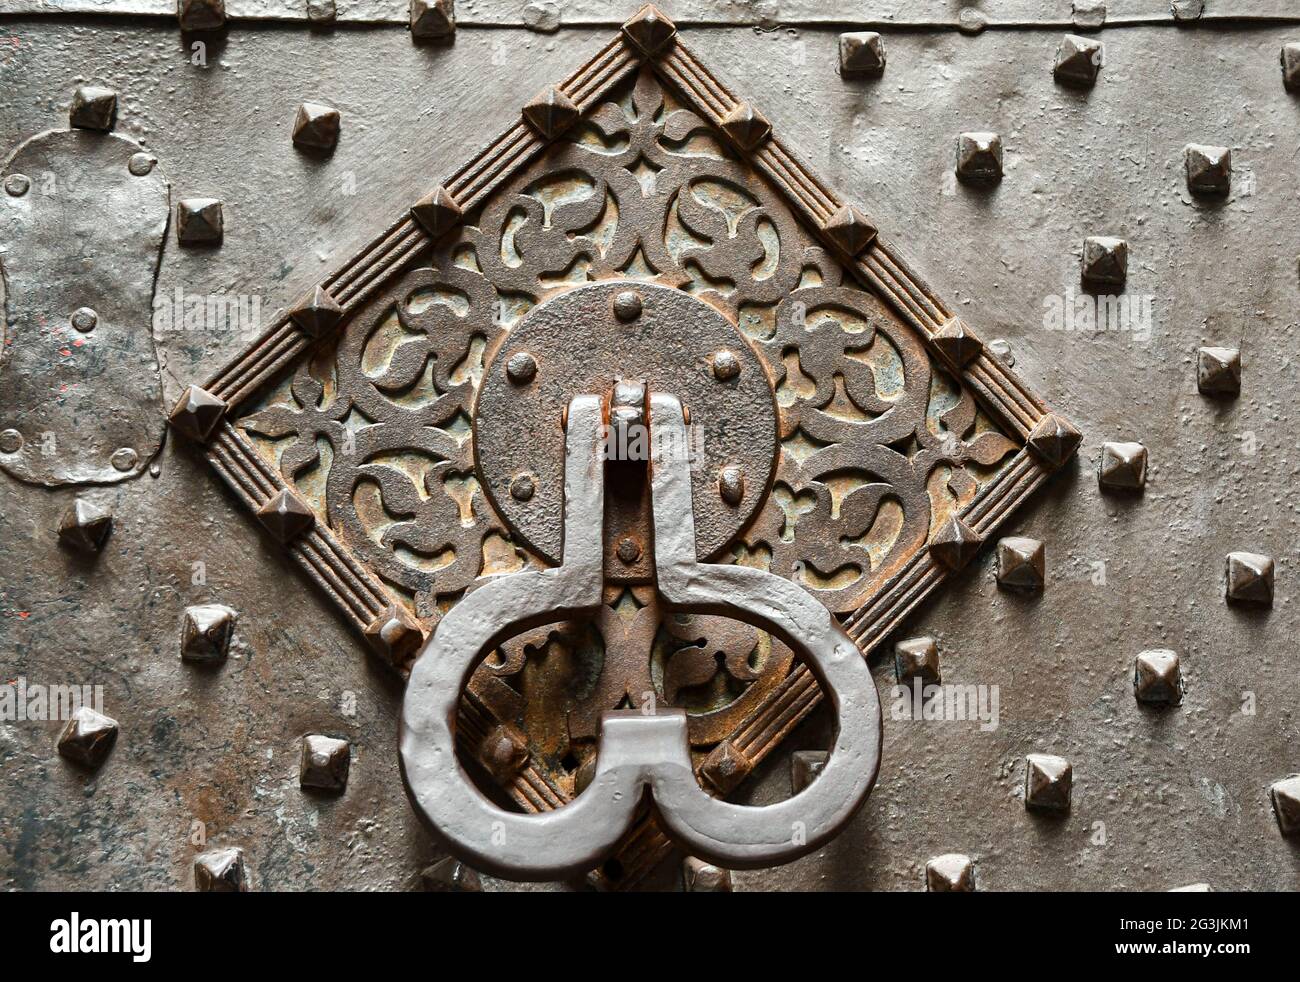 Die verzierte Eisentür des Palazzo Invrea mit einem phallisch geformten Klopfer, der die Präsenz eines Vergnügungshauses für weidige Kunden in der Vergangenheit anruft Stockfoto